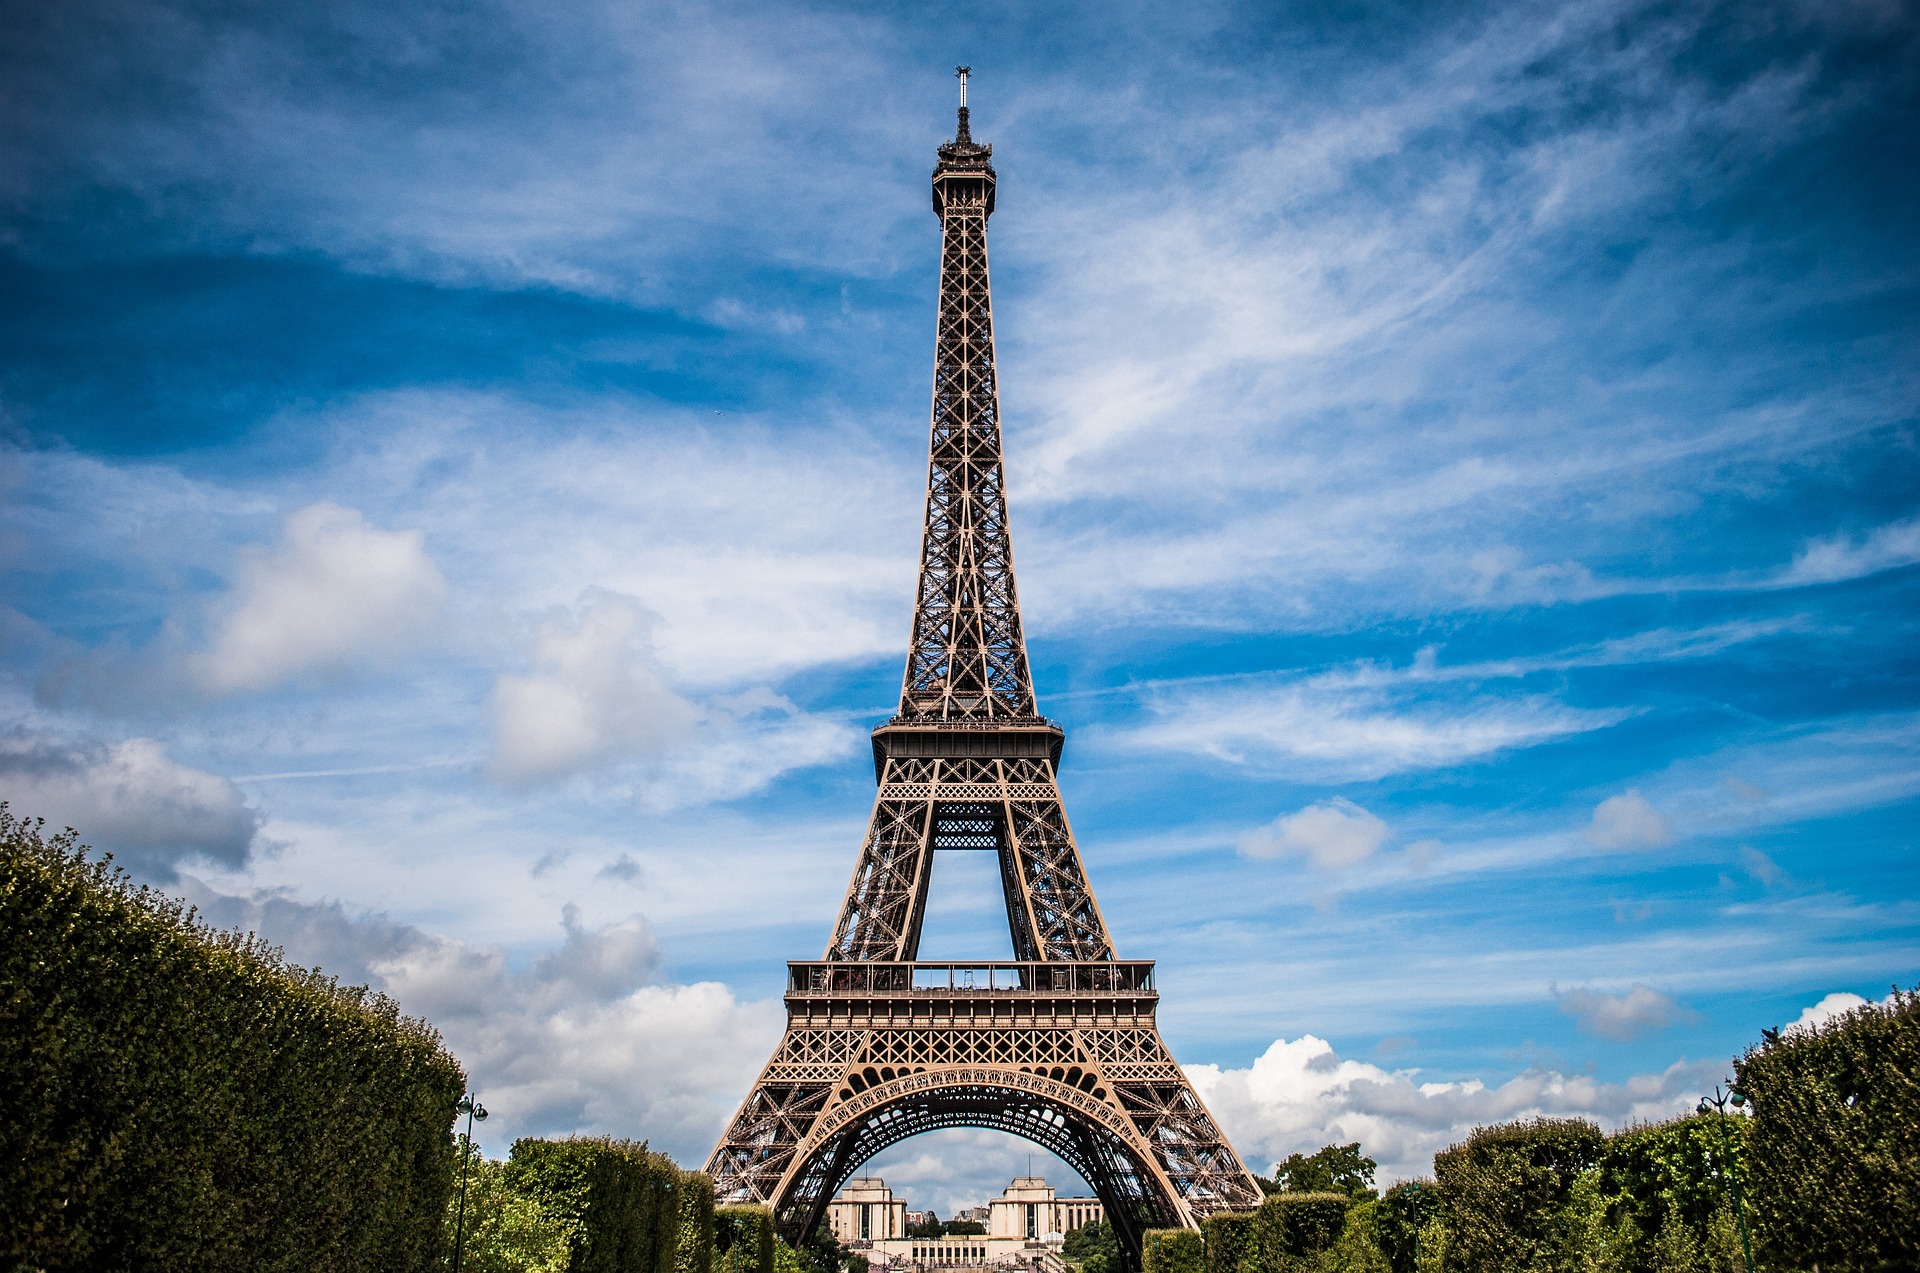 Programe a sua viagem e a sua estada em Paris